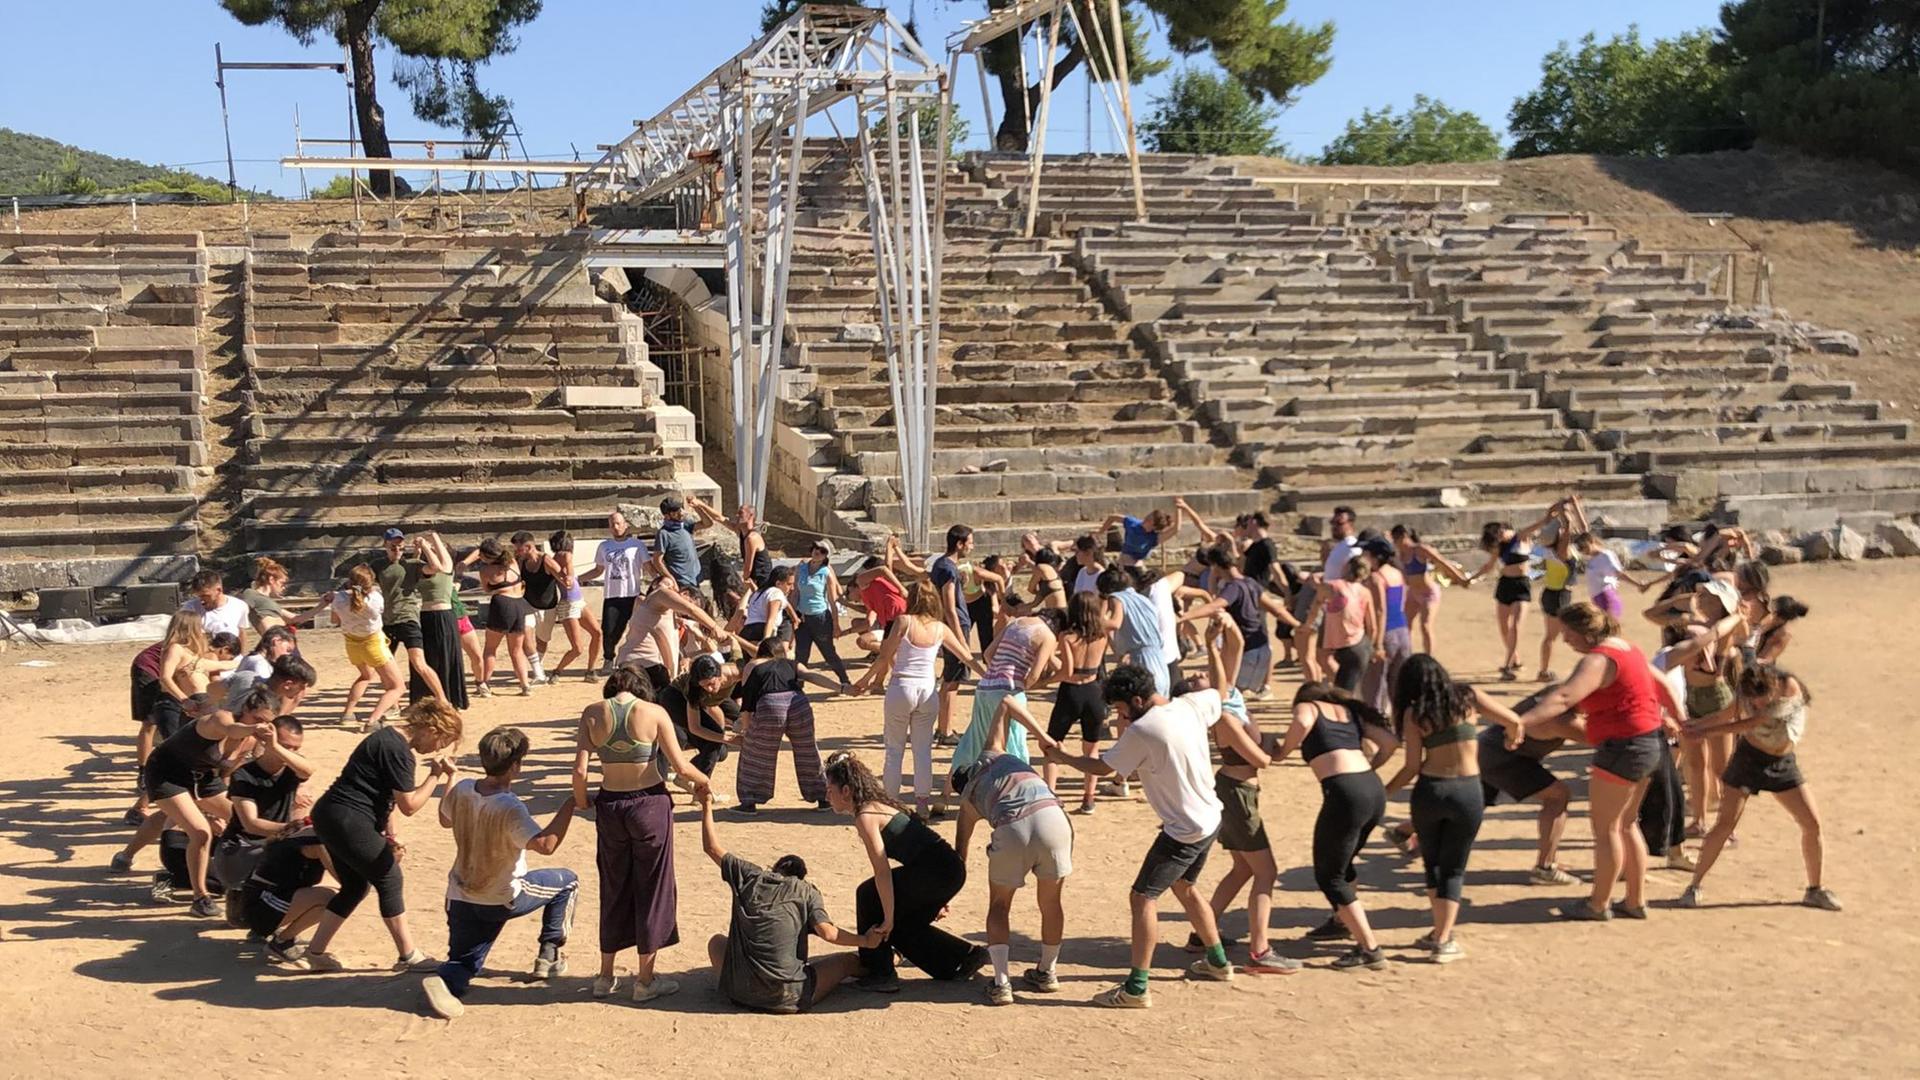 Während den Proben zum Athens/Epidaurus Festival auf dem antiken Ruinengelände.Die Teilnehmer kommen von überall her: Griechenland, die Nachbarländer, Europa, China, Brasilien, Kanada.